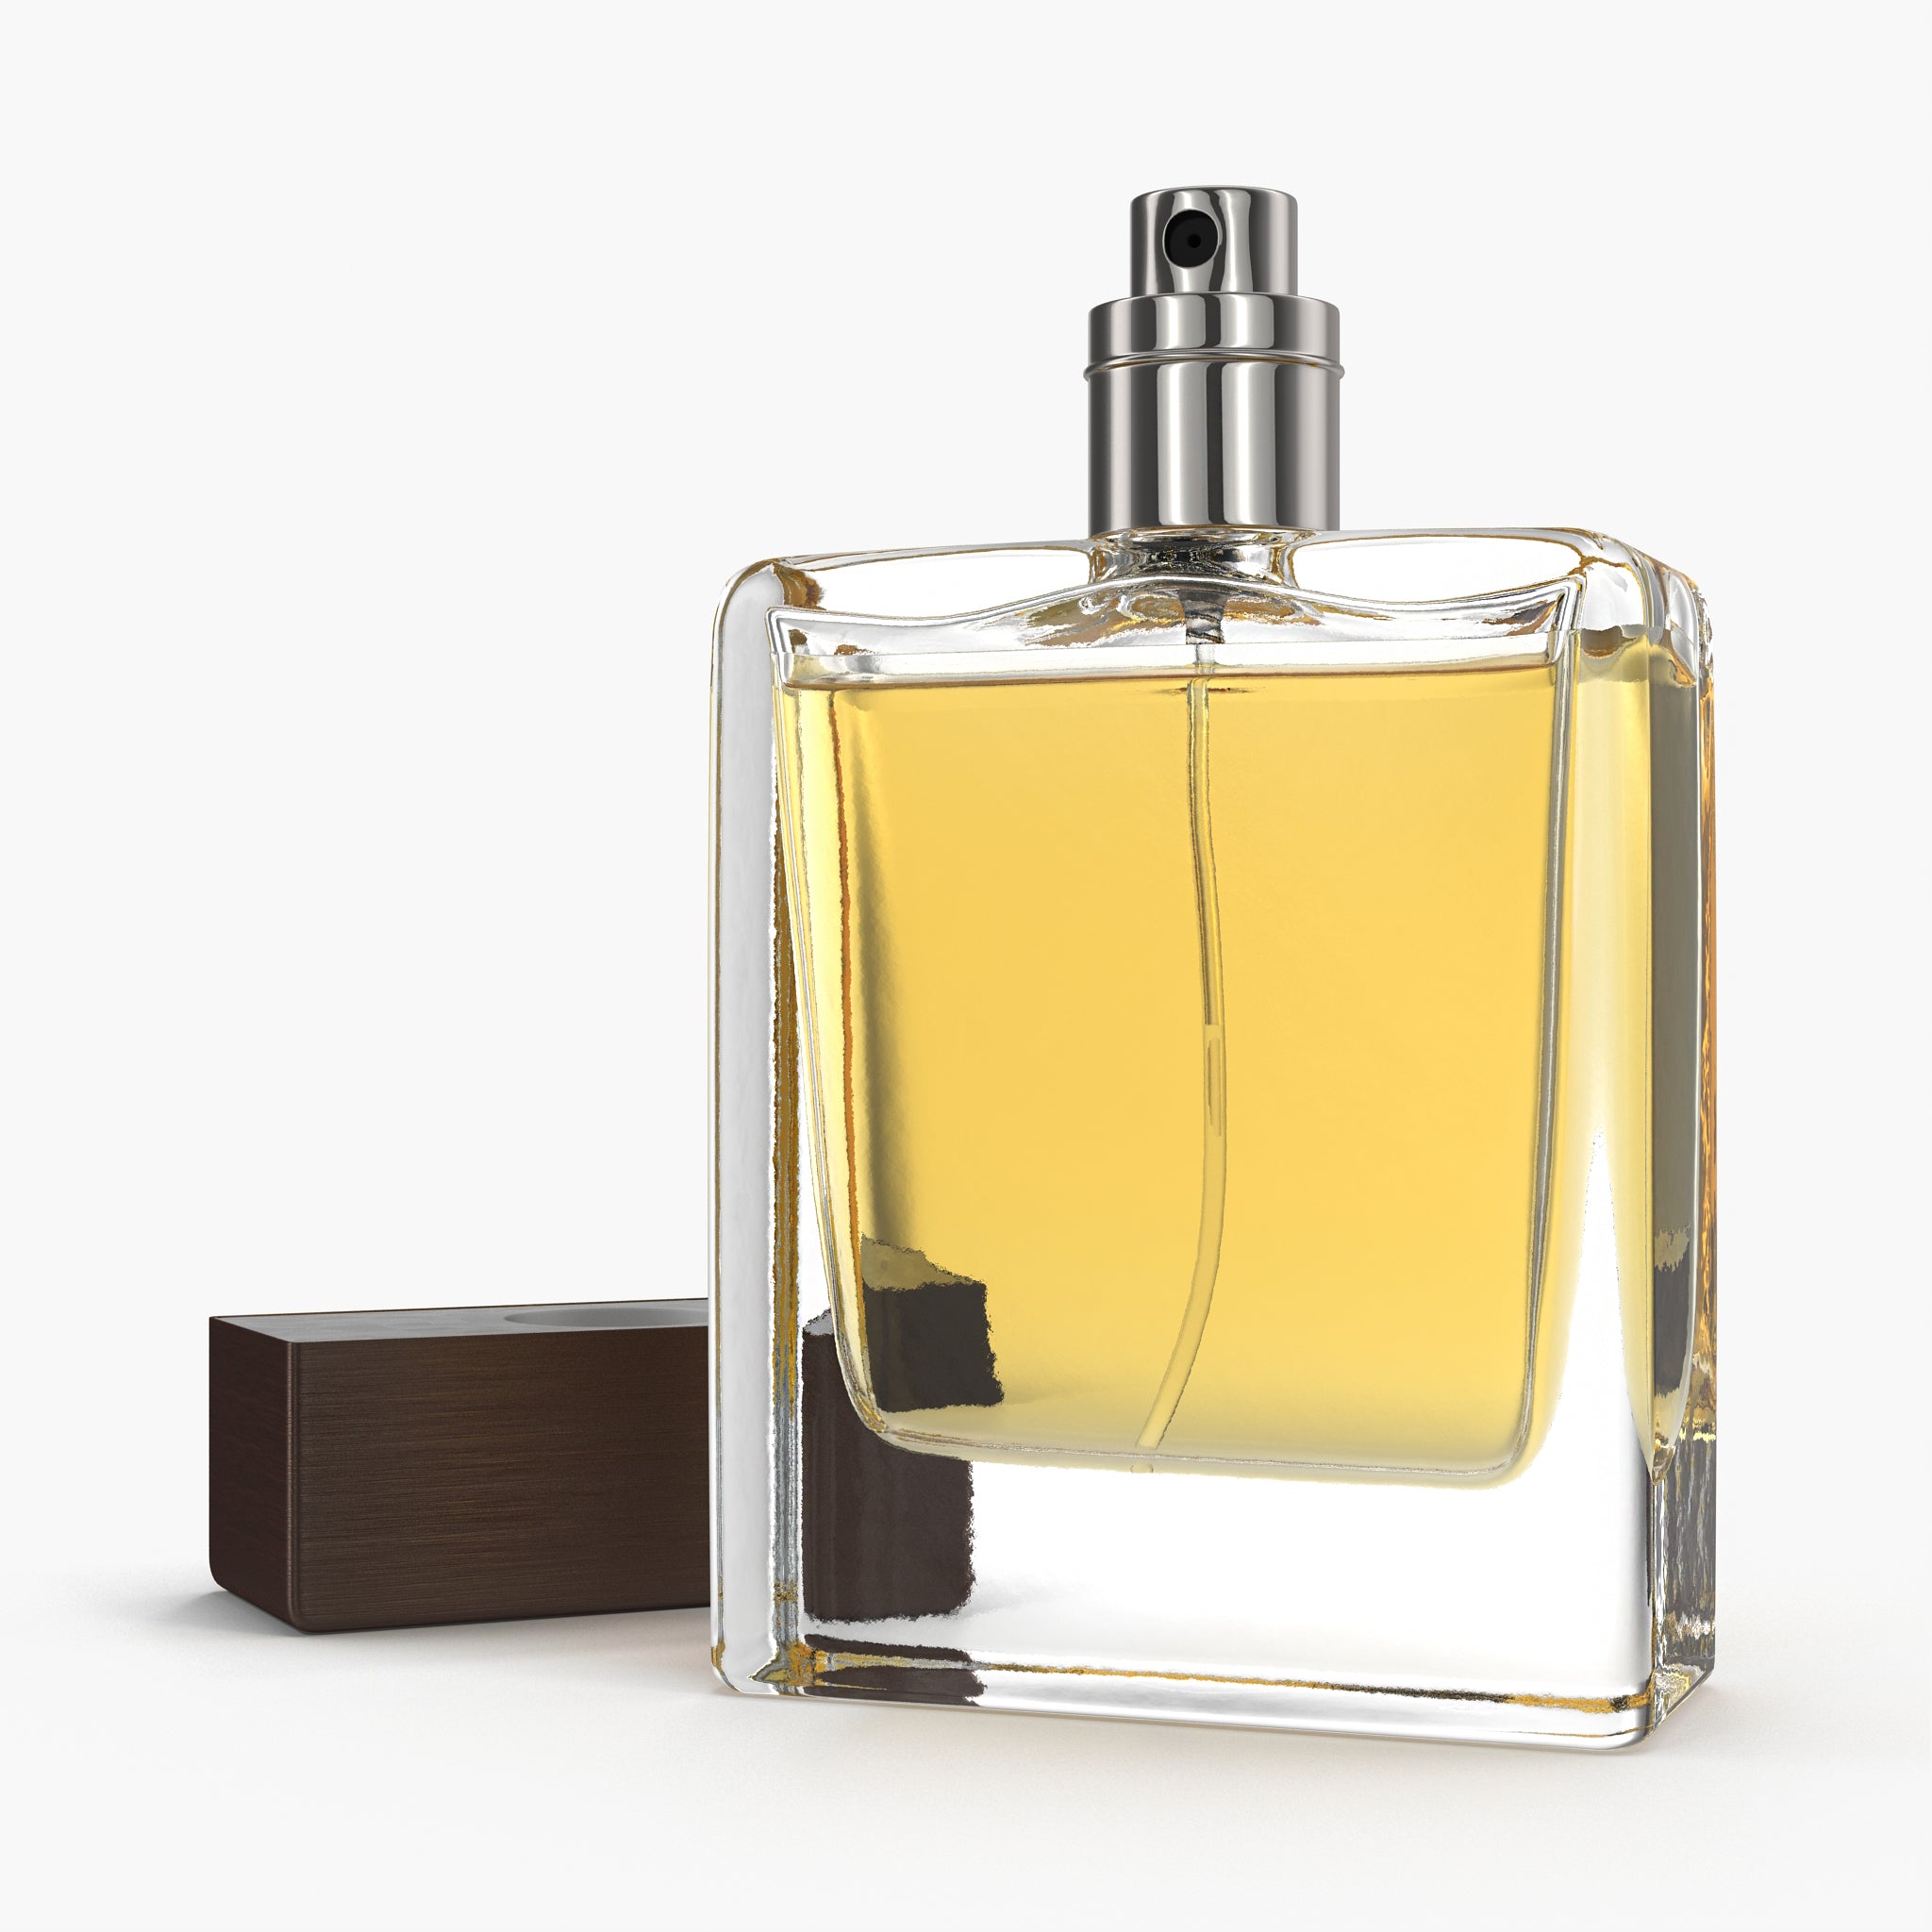 Oil Based Perfume, Chanel Allure Homme Sport Inspired